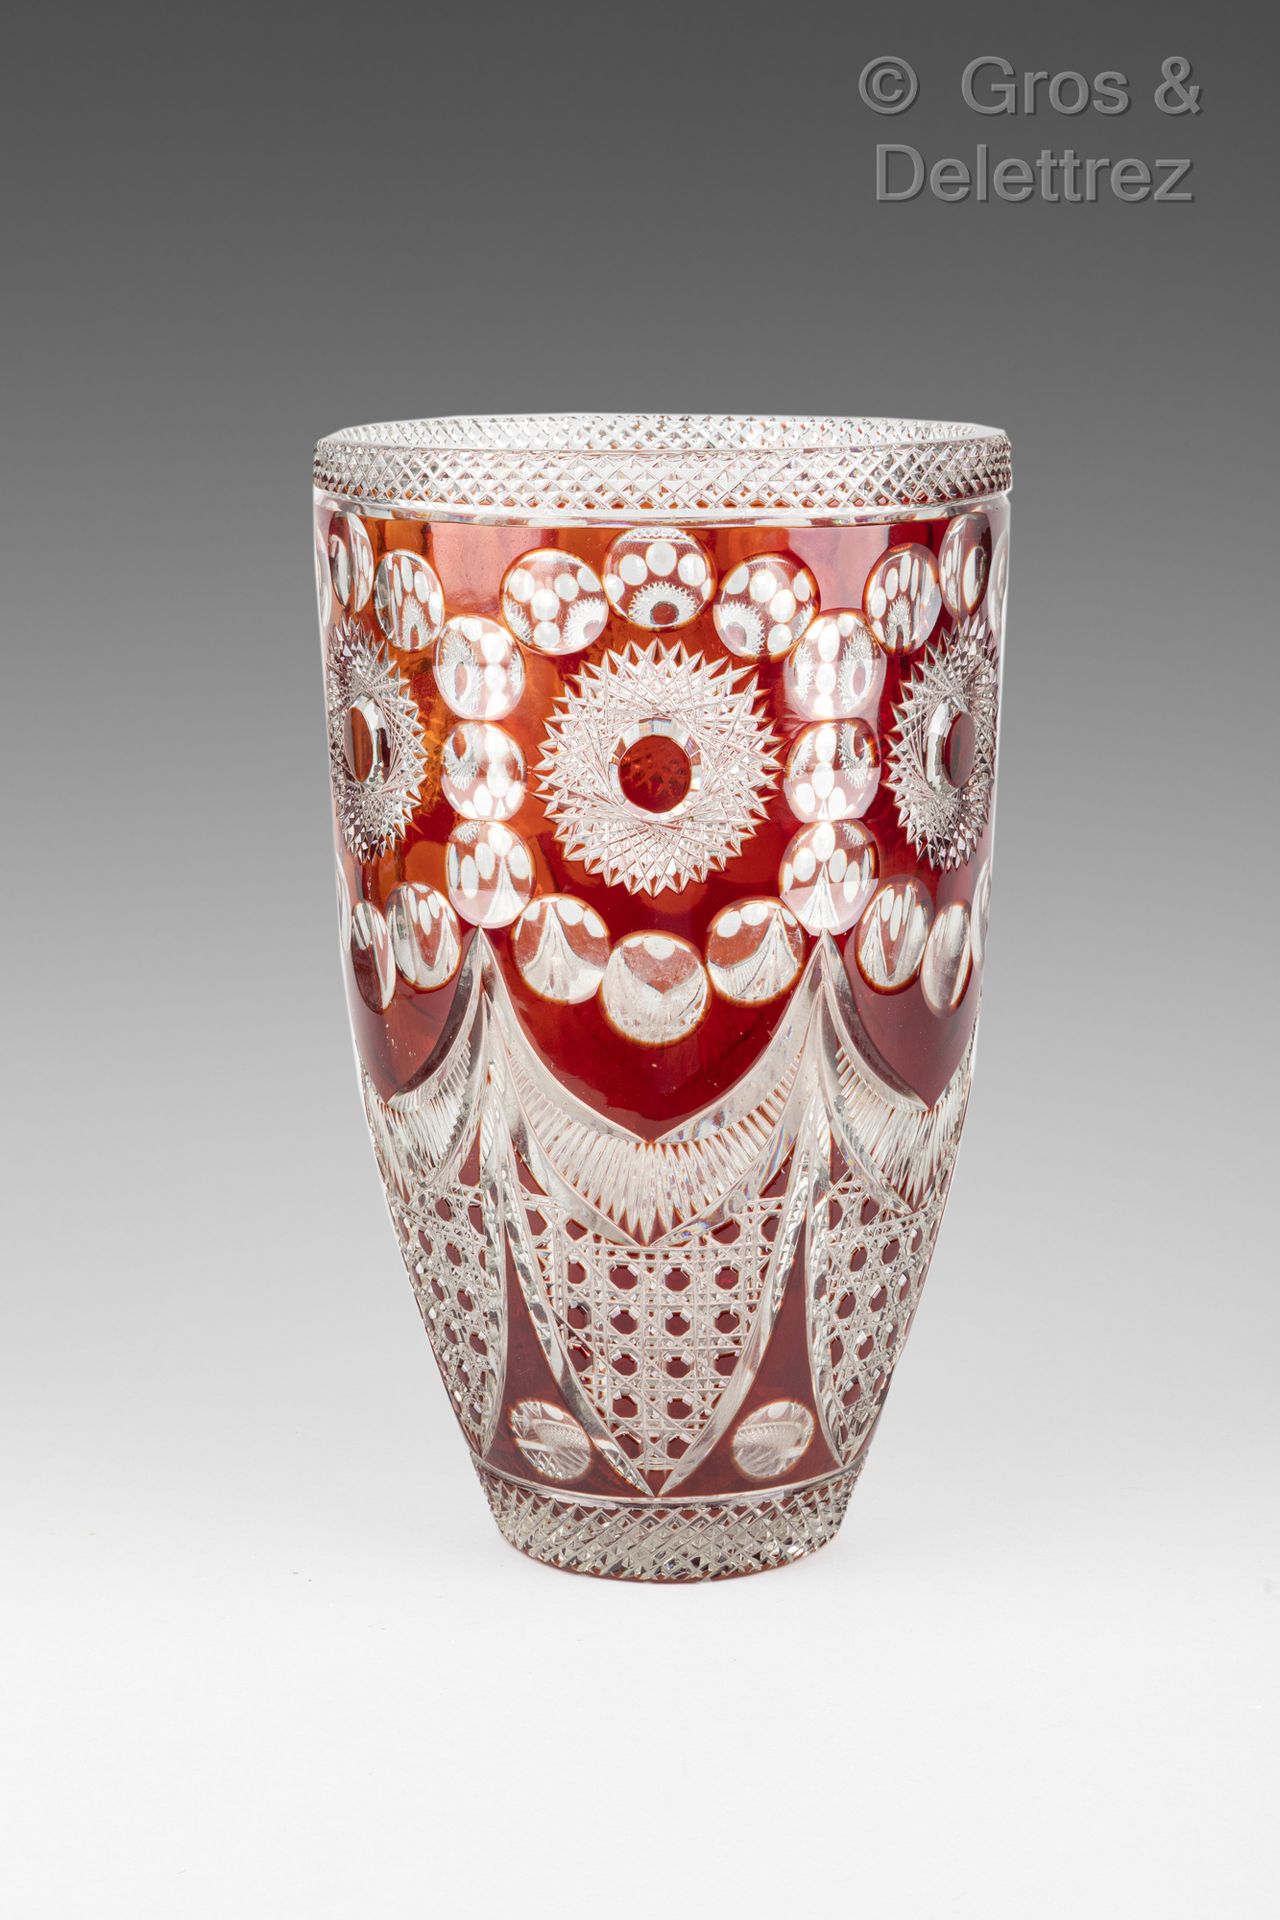 Null Vase en cristal doublé brun gravé

Haut : 32 cm